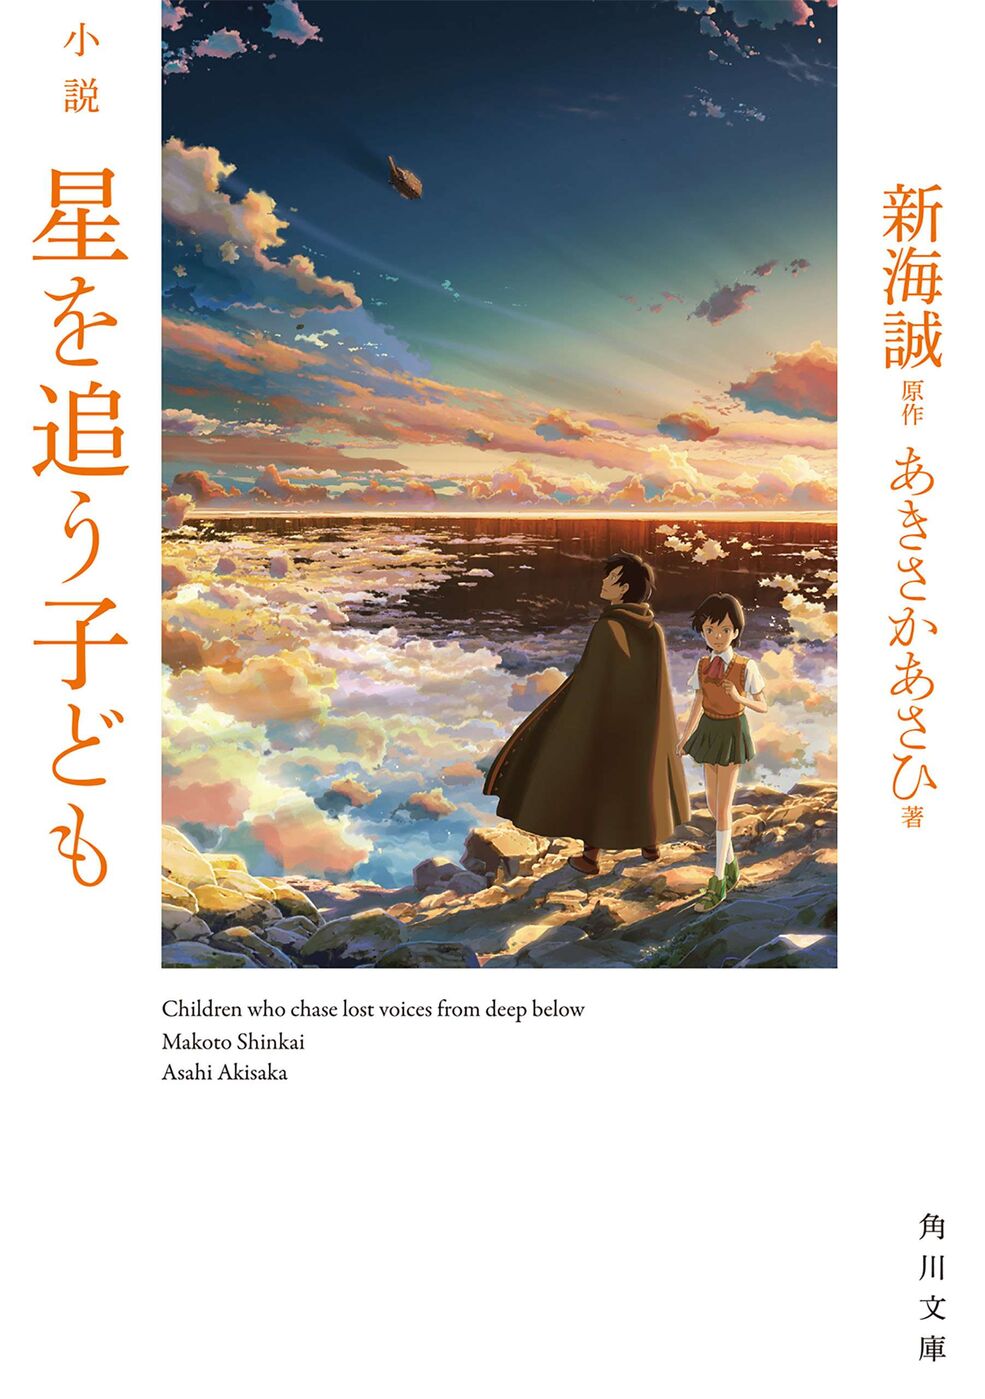 Children Who Chase Lost Voices | Makoto Shinkai Wiki | Fandom